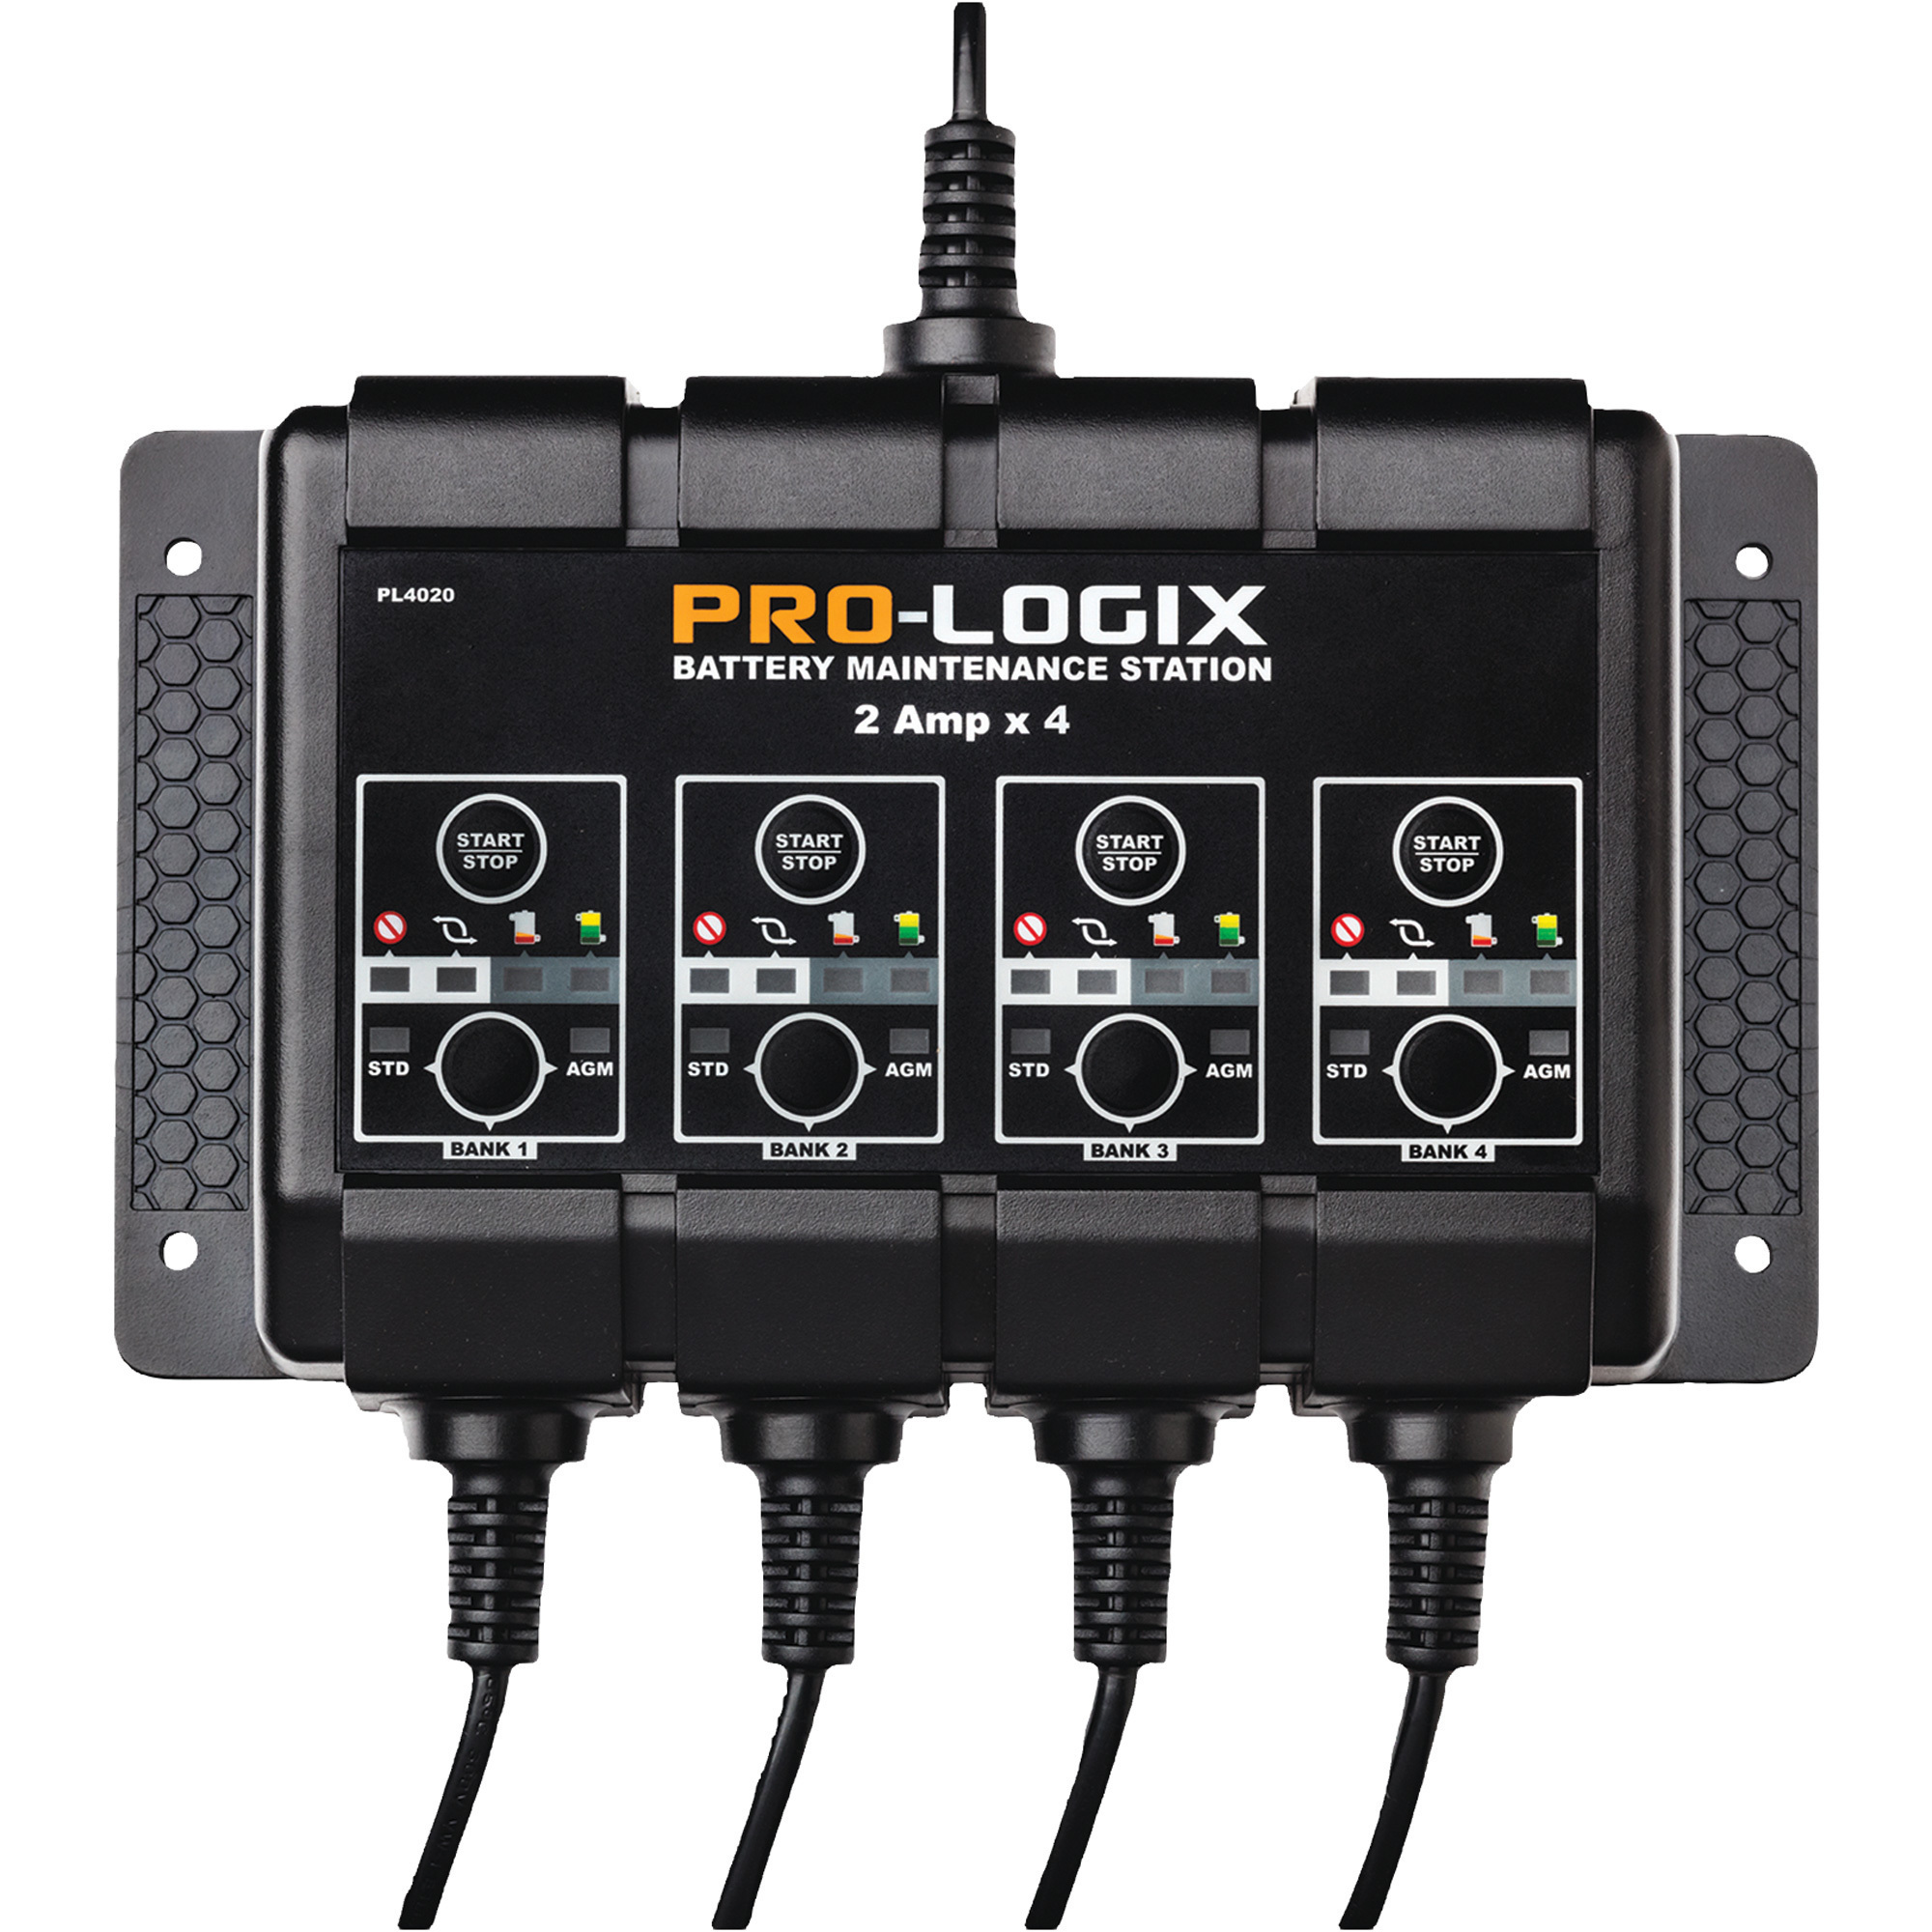 Pro-Logix Battery Maintenance Station, 2 Amps x 4 Channels, Model PL4020